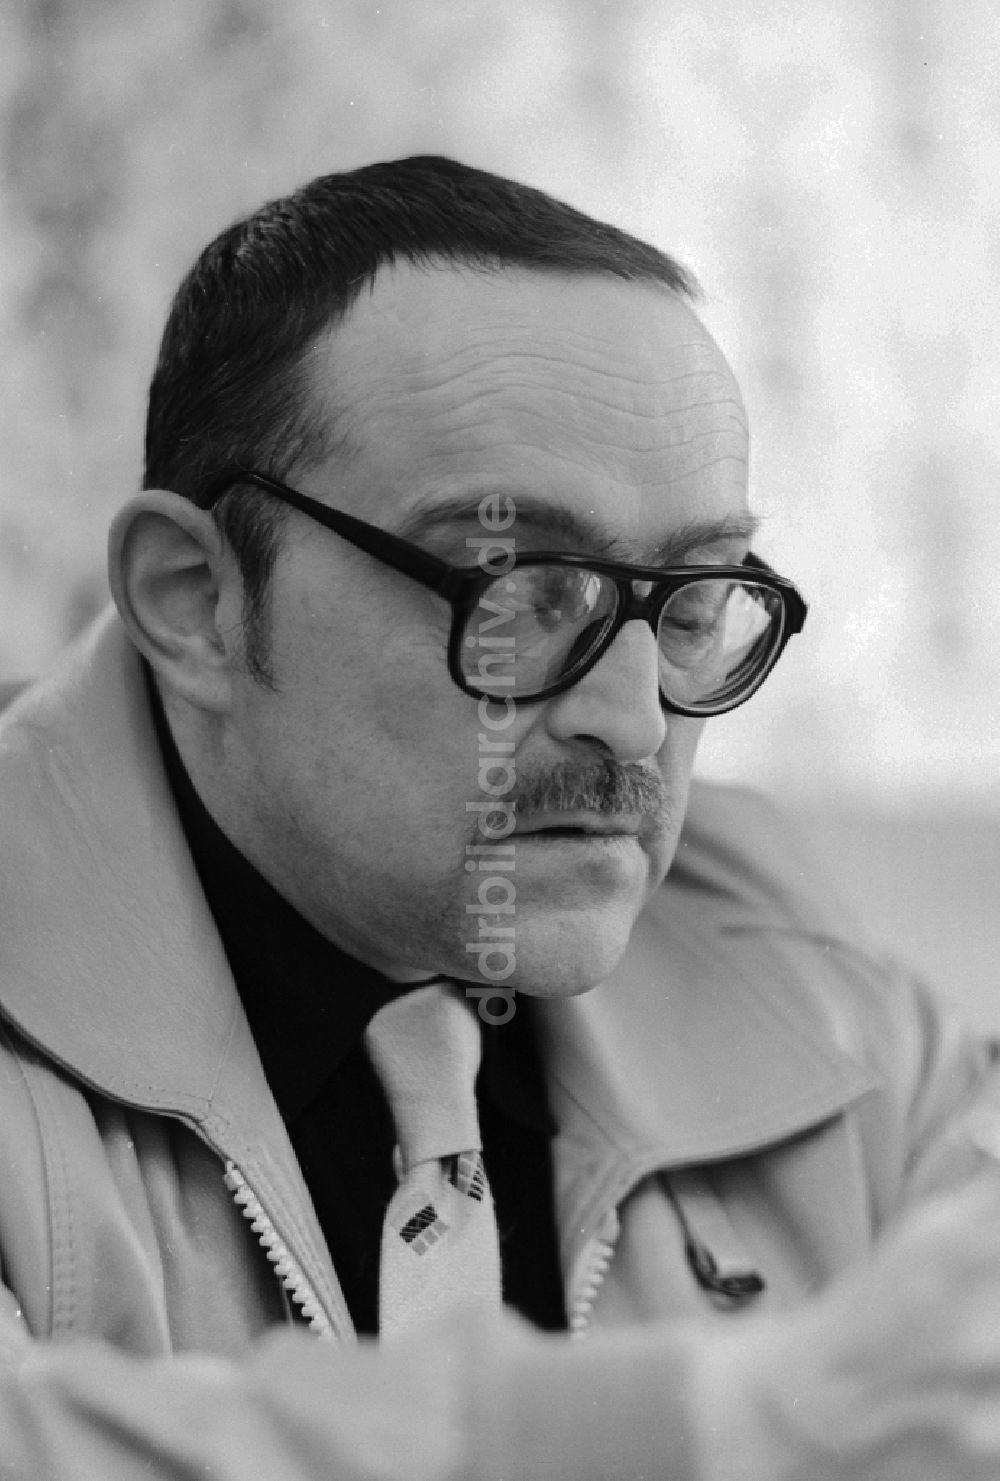 Berlin: Der Schriftsteller und Drehbuchautor Otto Bonhoff (1931 - 2001) in Berlin, der ehemaligen Hauptstadt der DDR, Deutsche Demokratische Republik